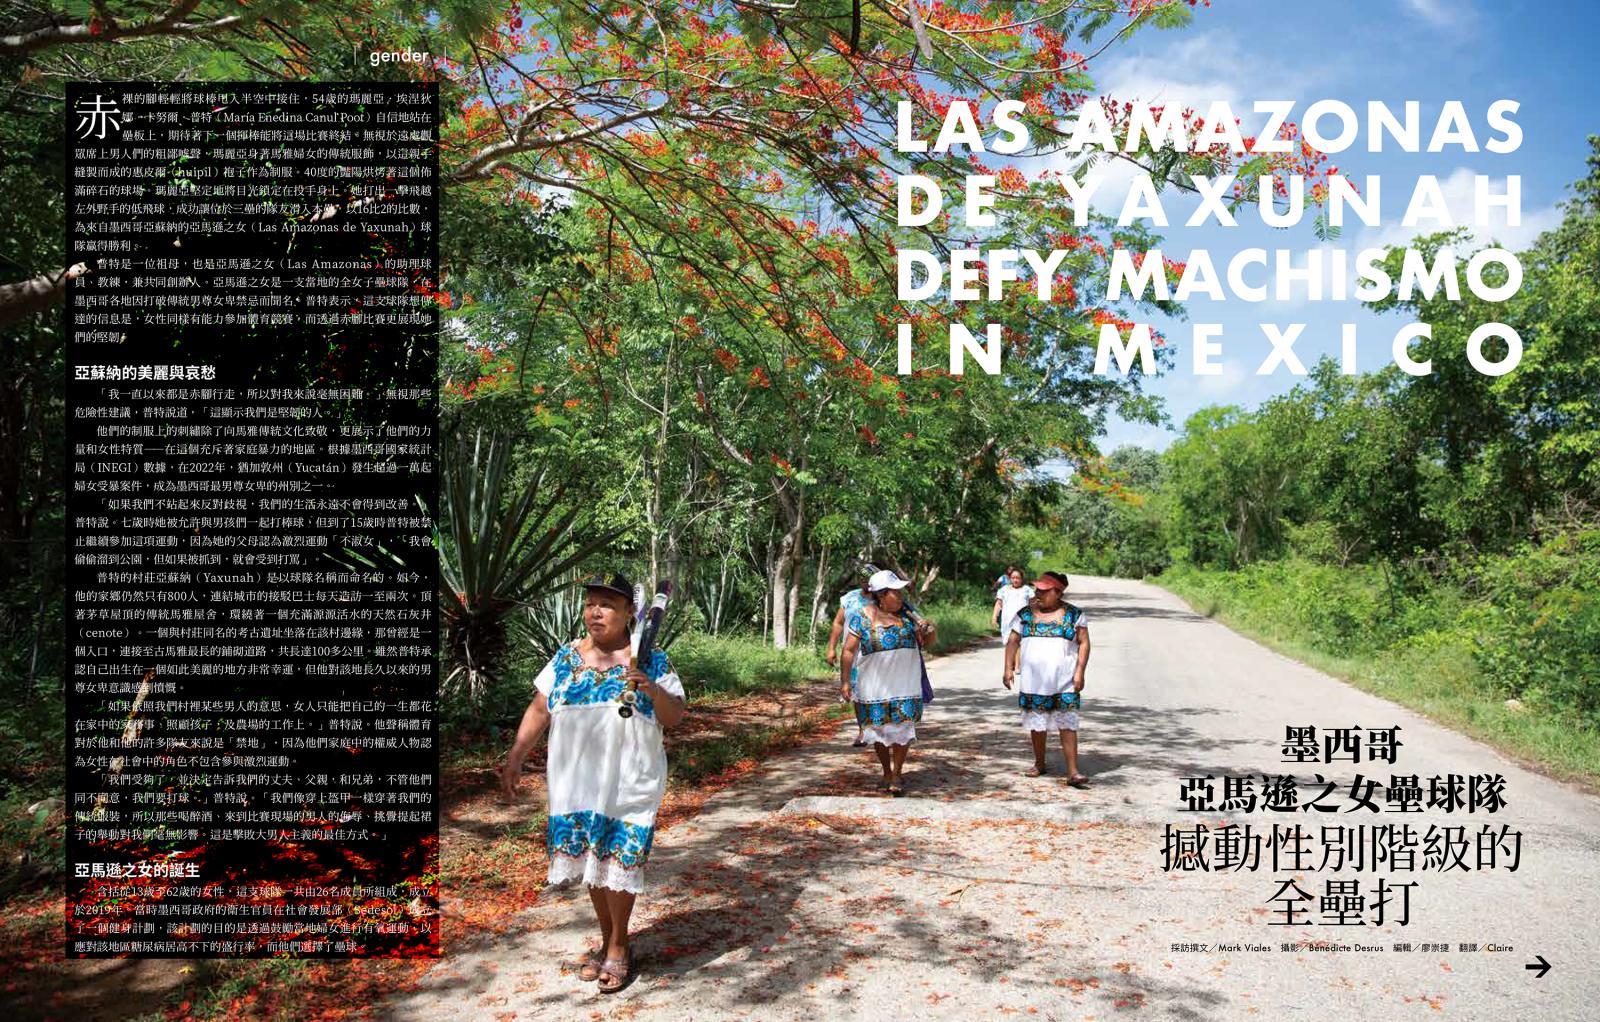 Publication in MARIE CLAIRE - TAIWAN.  "Las Amazonas de Yaxunah defy machismo in Mexico"